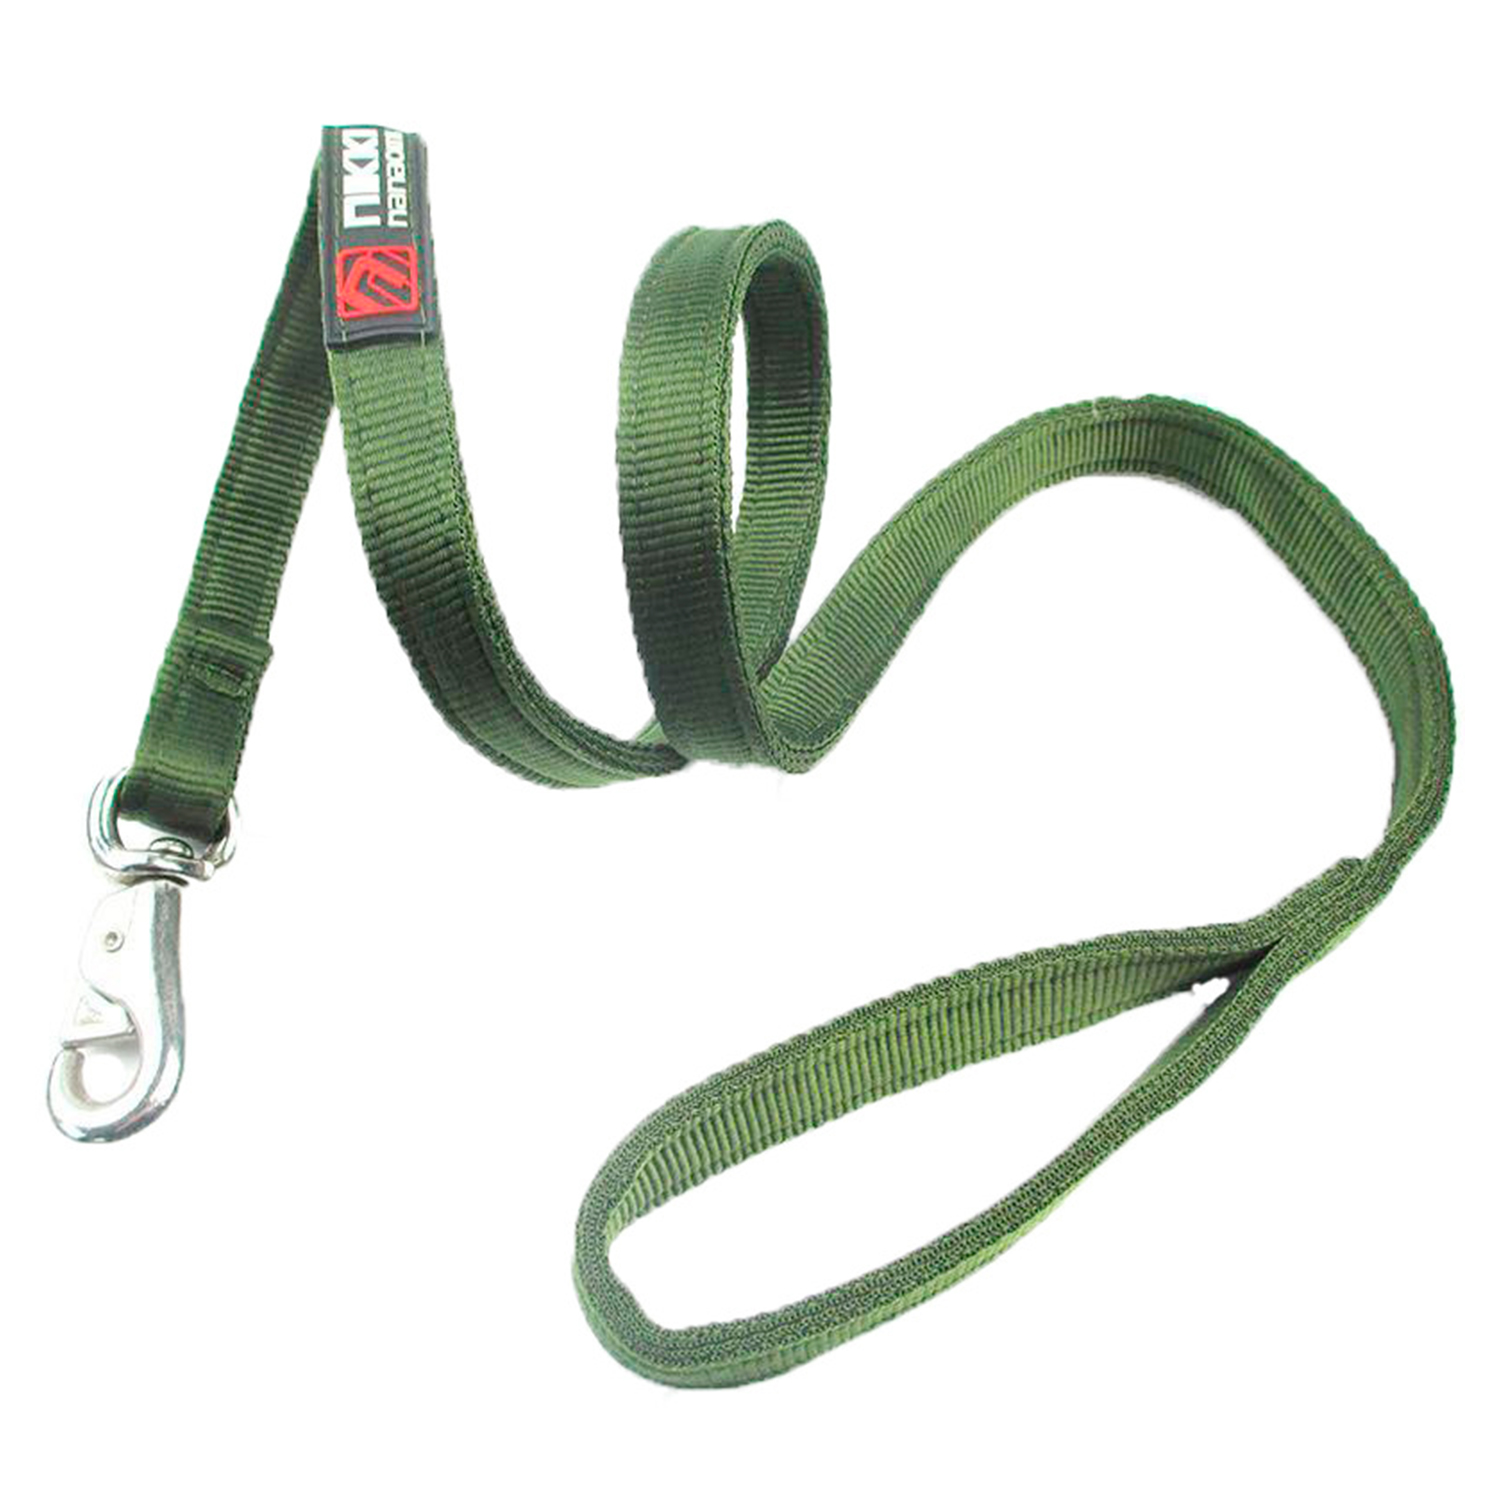 Поводок для собак, длина 1,5 м, ширина 2,5 см, цвет зеленый, Pets & Friends PF-LD-06